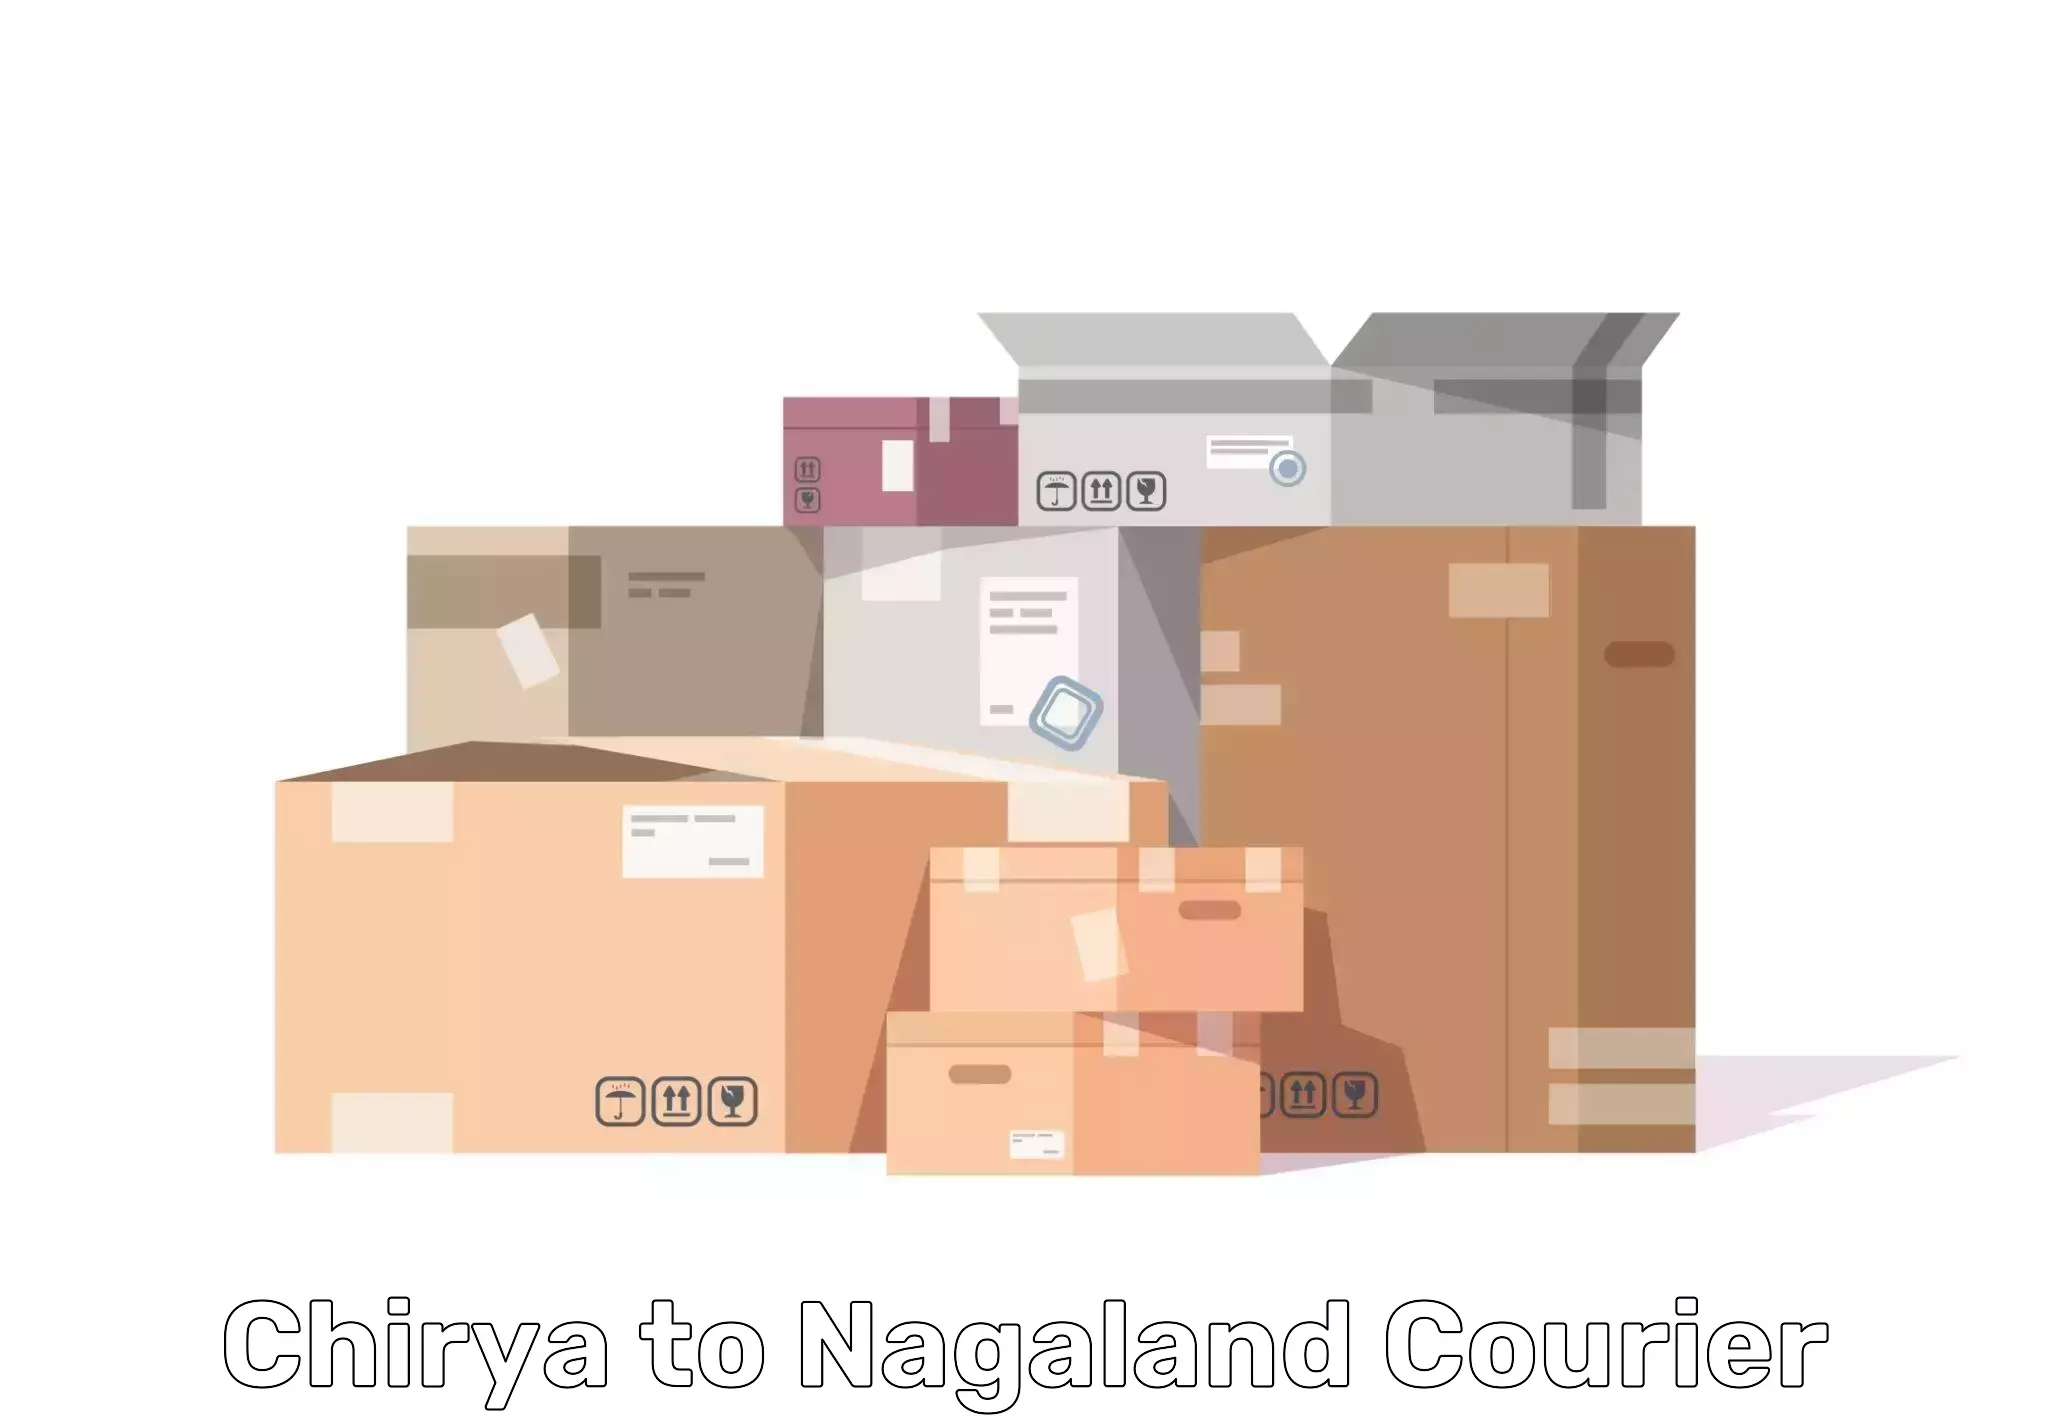 Furniture moving experts Chirya to Longleng